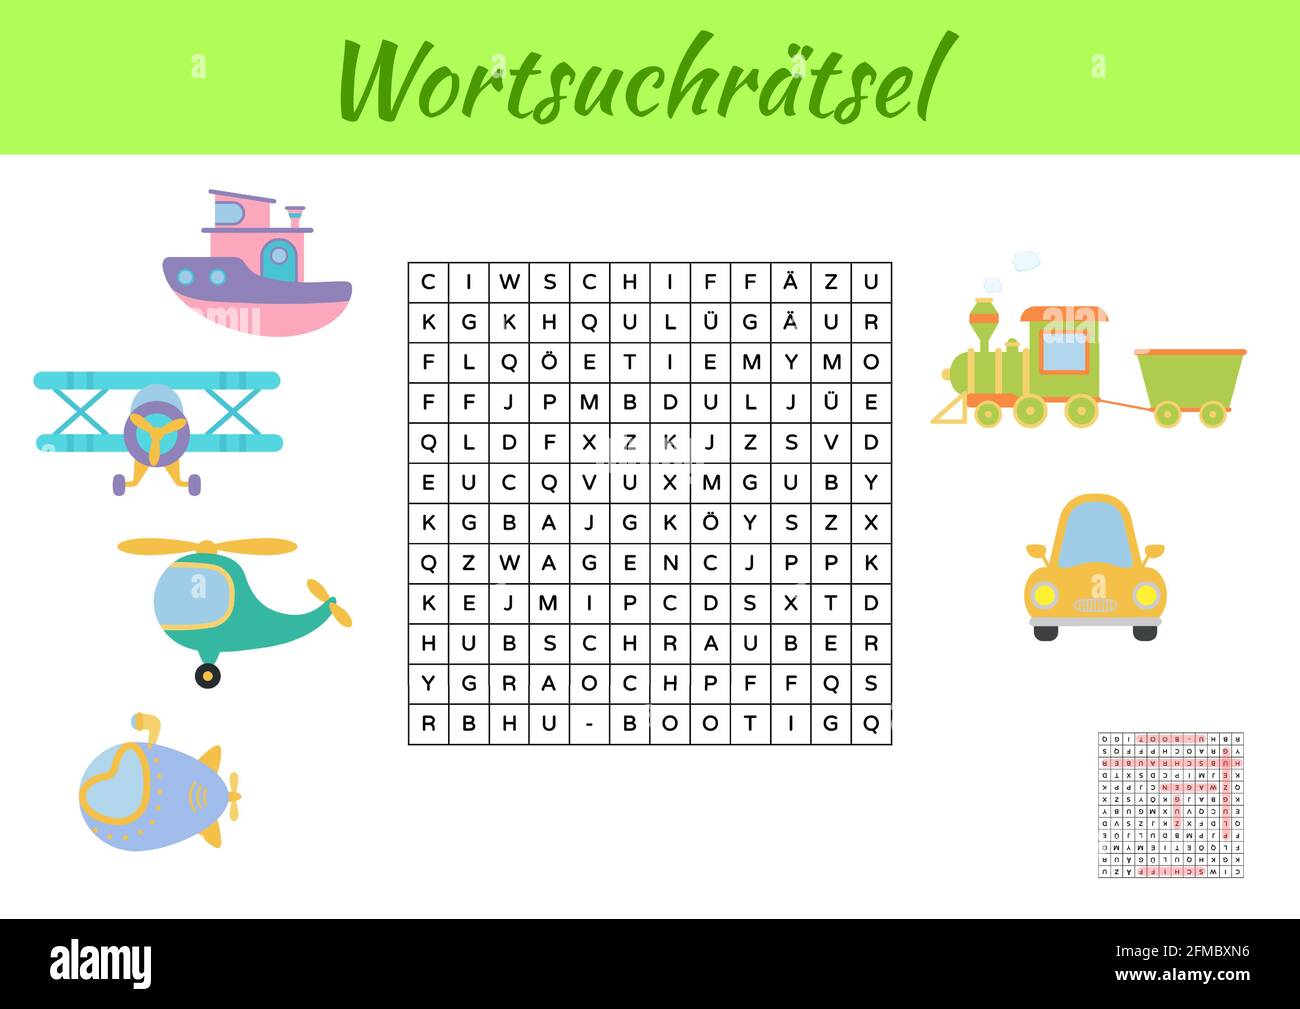 Wortsuchrätsel - Wortsuche Puzzle. Kinder Aktivität Arbeitsblatt bunt  druckbare Version. Lernspiel für deutsche Wörter zu studieren. Enthält  Antworten. Ve Stock-Vektorgrafik - Alamy